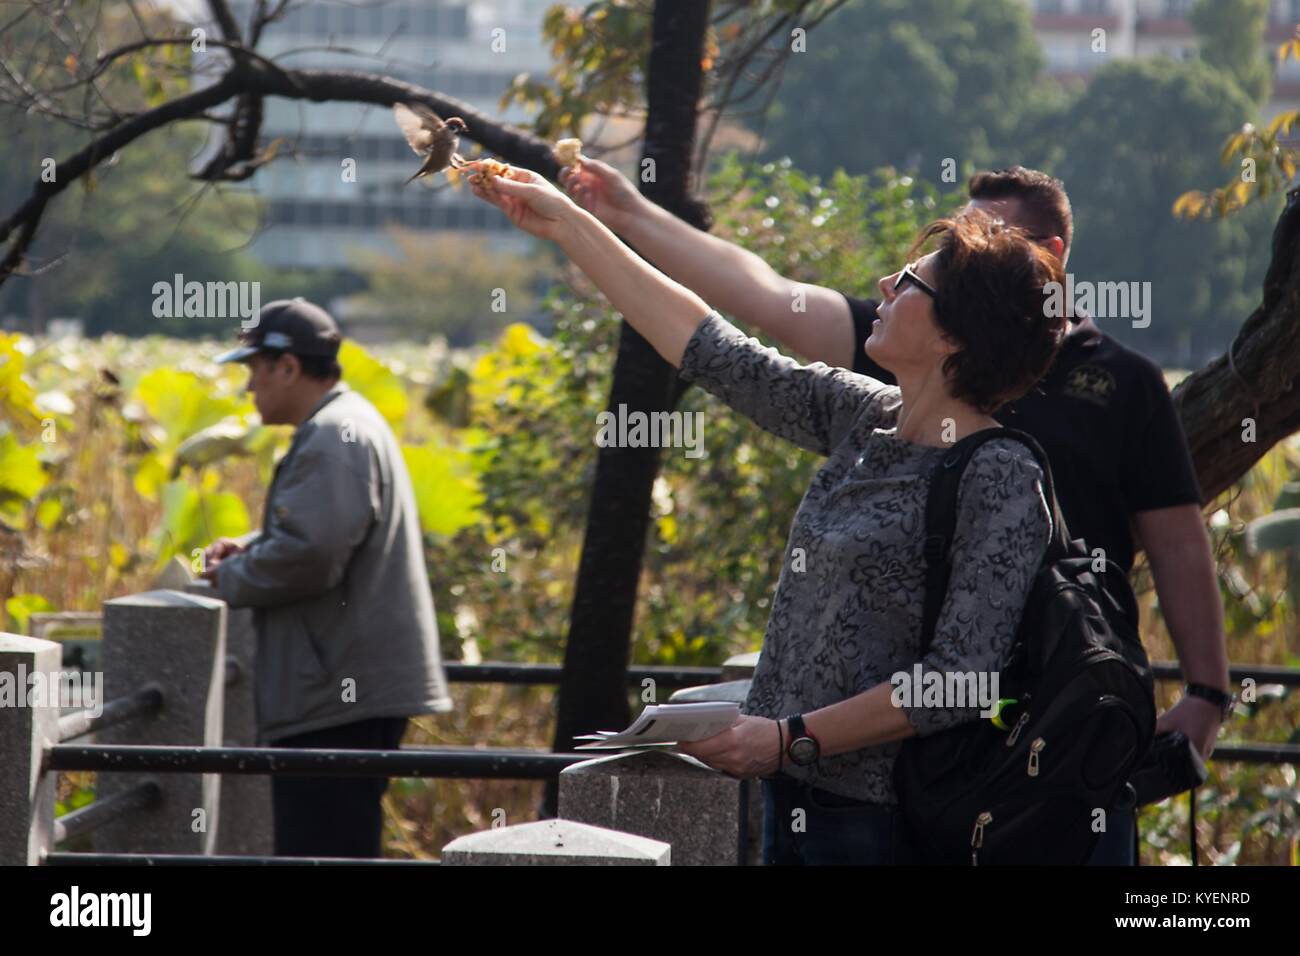 Les visiteurs peuvent contenir jusqu'pain et nourrir les petits oiseaux à la main dans le parc Ueno, un parc public dans le quartier de Ueno de Taitō, Tokyo, Japon, Novembre, 2017. () Banque D'Images